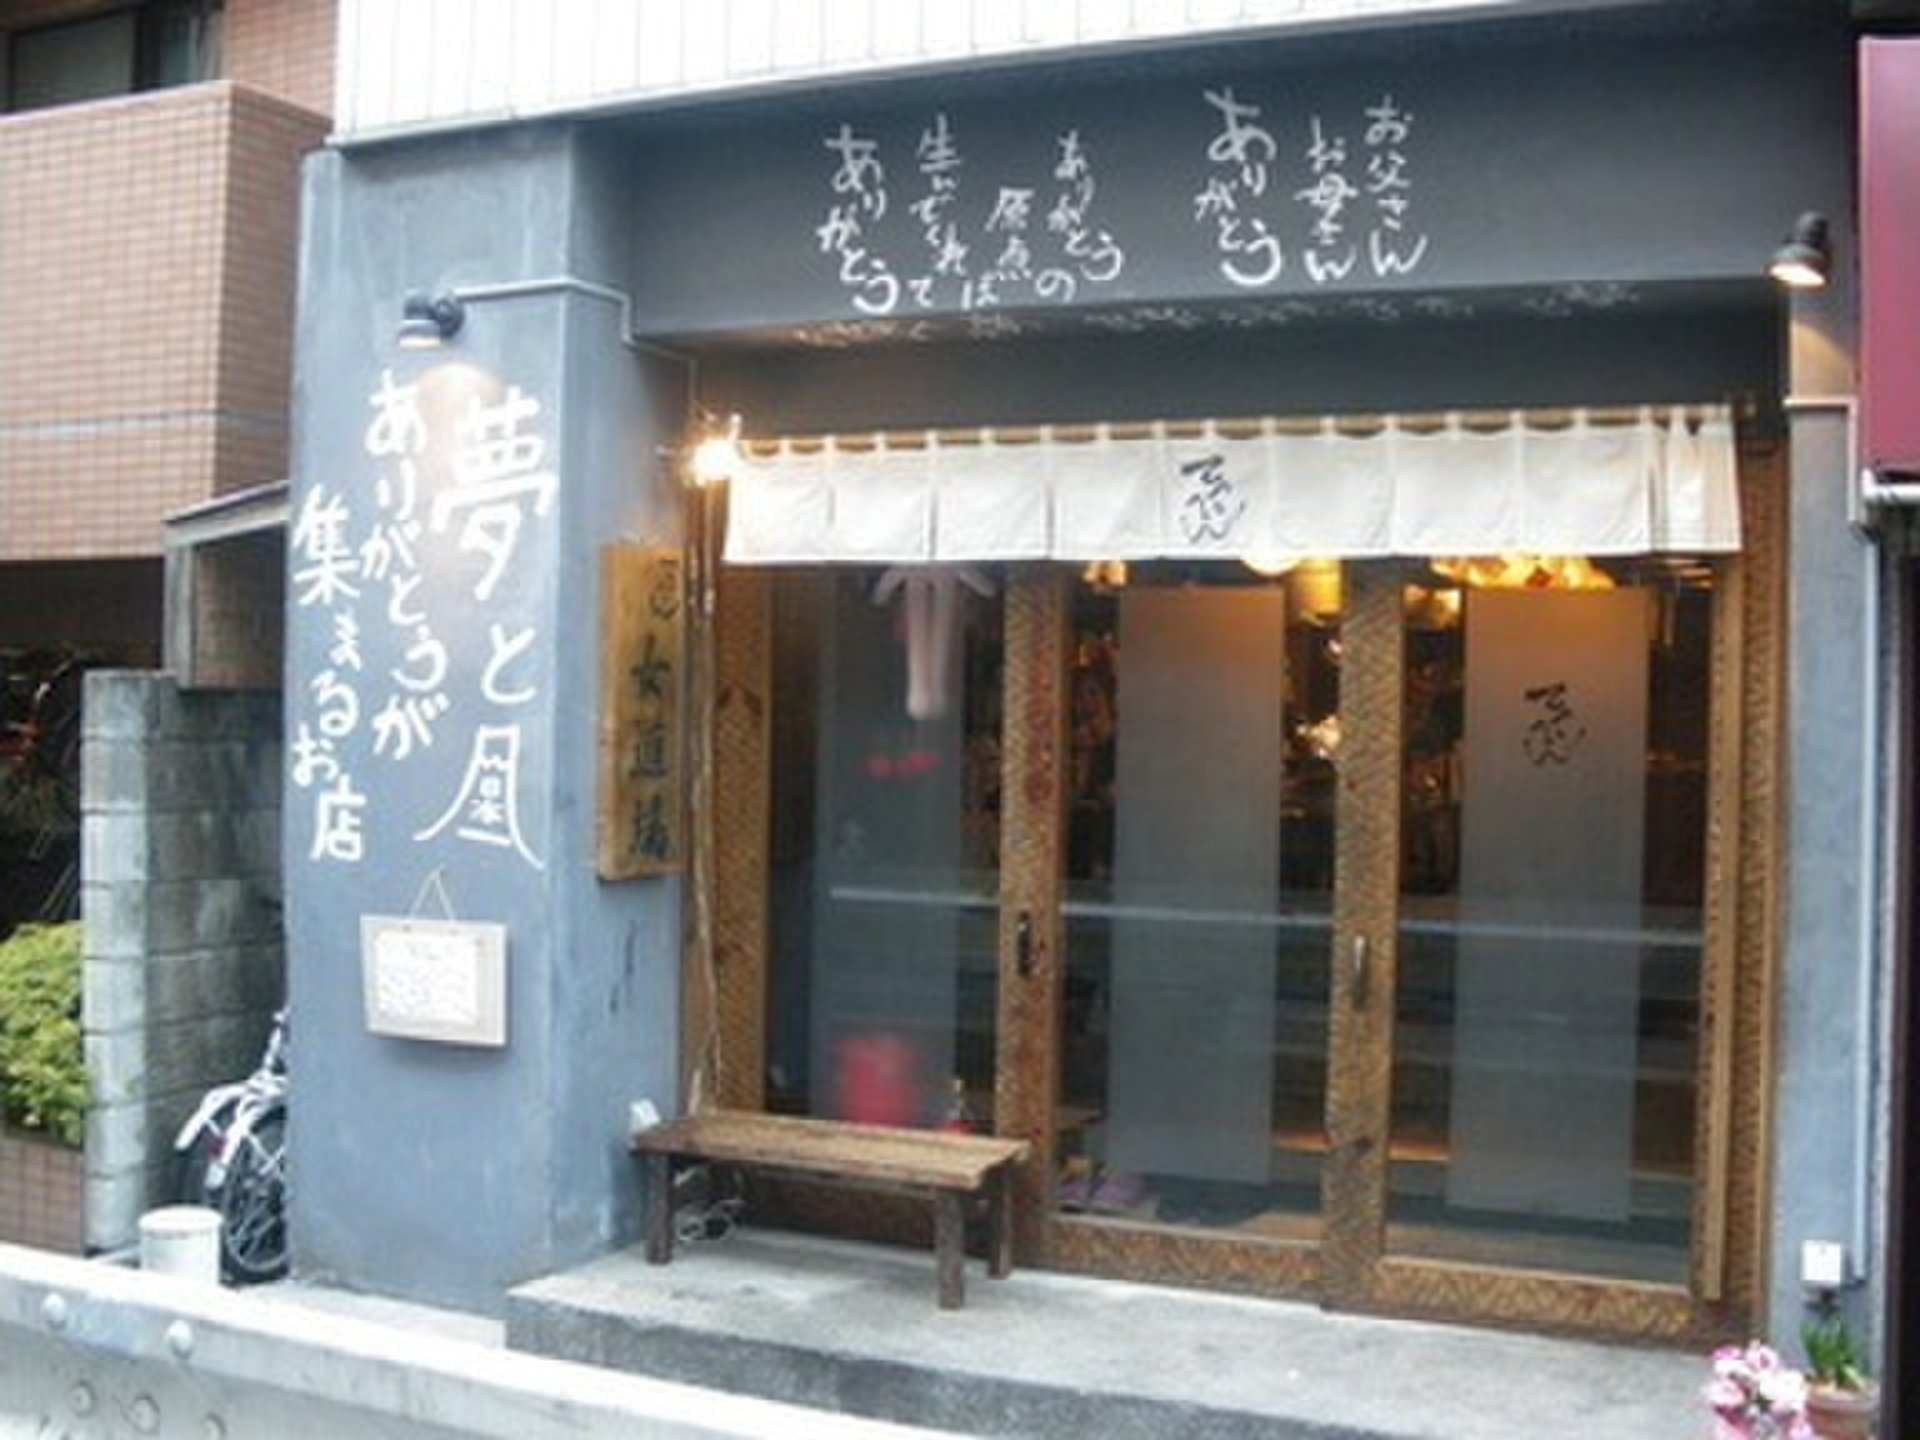 渋谷女性店員オンリーの居酒屋で誕生日サプライズからの1980円でお台場の大江戸温泉でオール